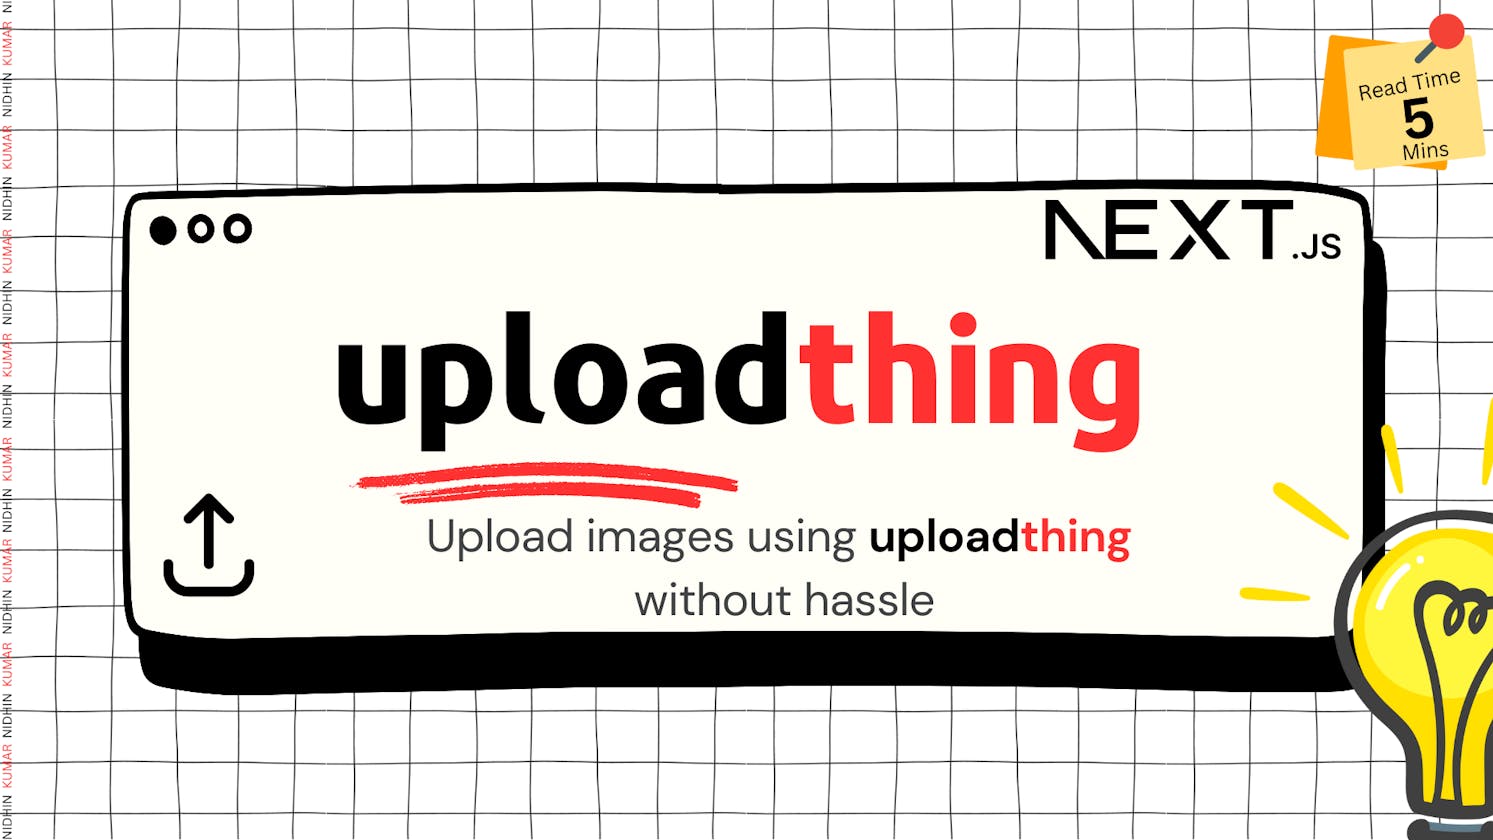 Upload images using uploadthing